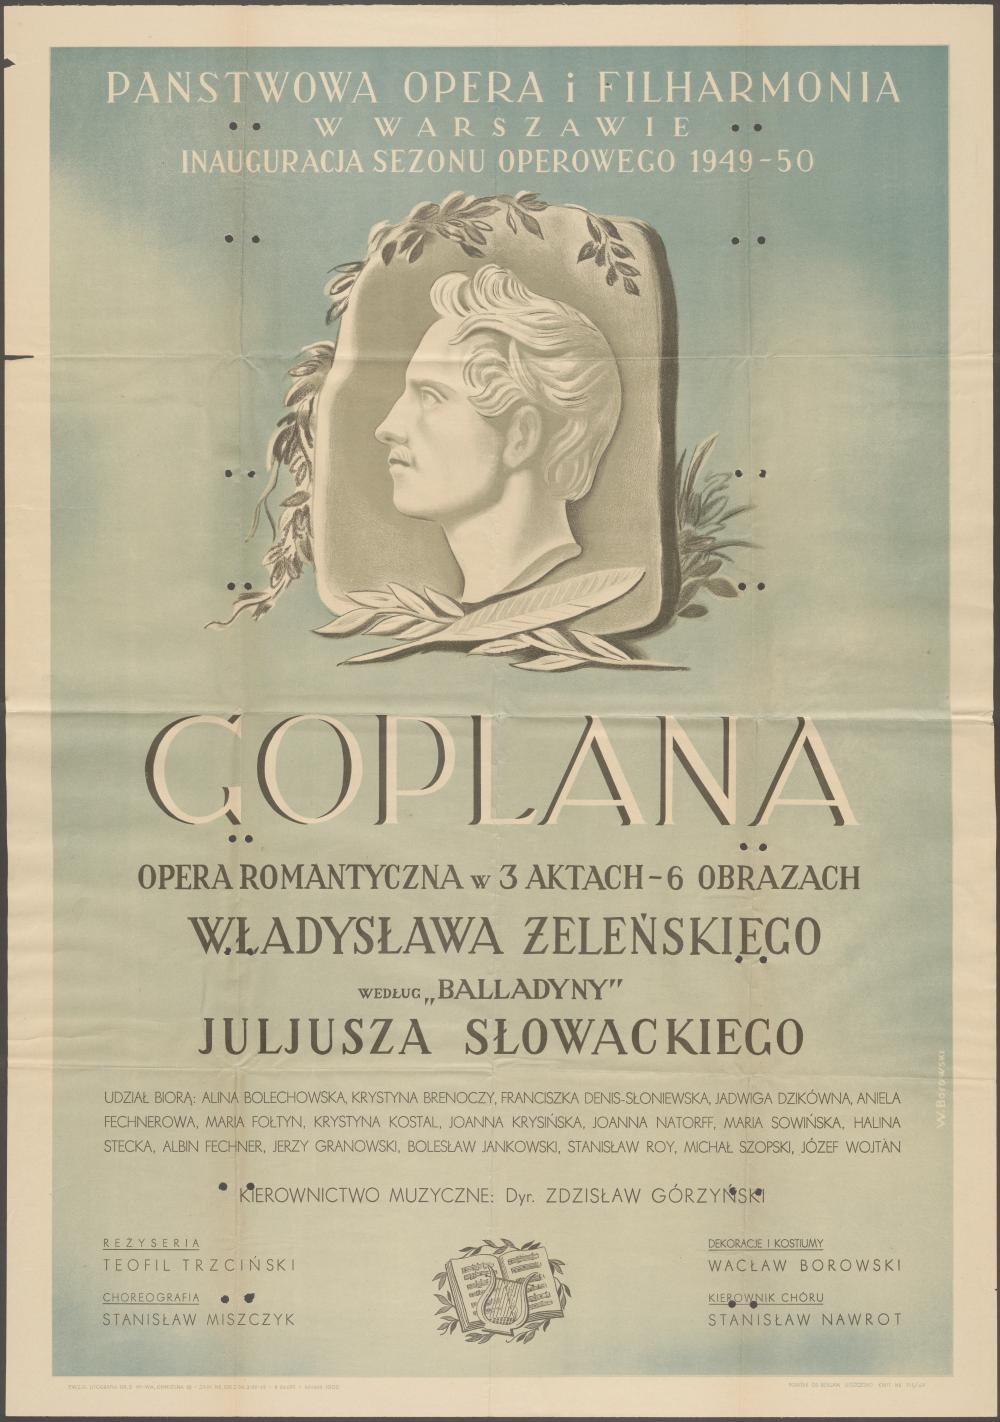 Afisz ,,Goplana" Władysław Żeleński 30-12-1949. Inauguracja sezonu operowego 1949/1950 w Państwowej Operze i Filharmoni w Warszawie